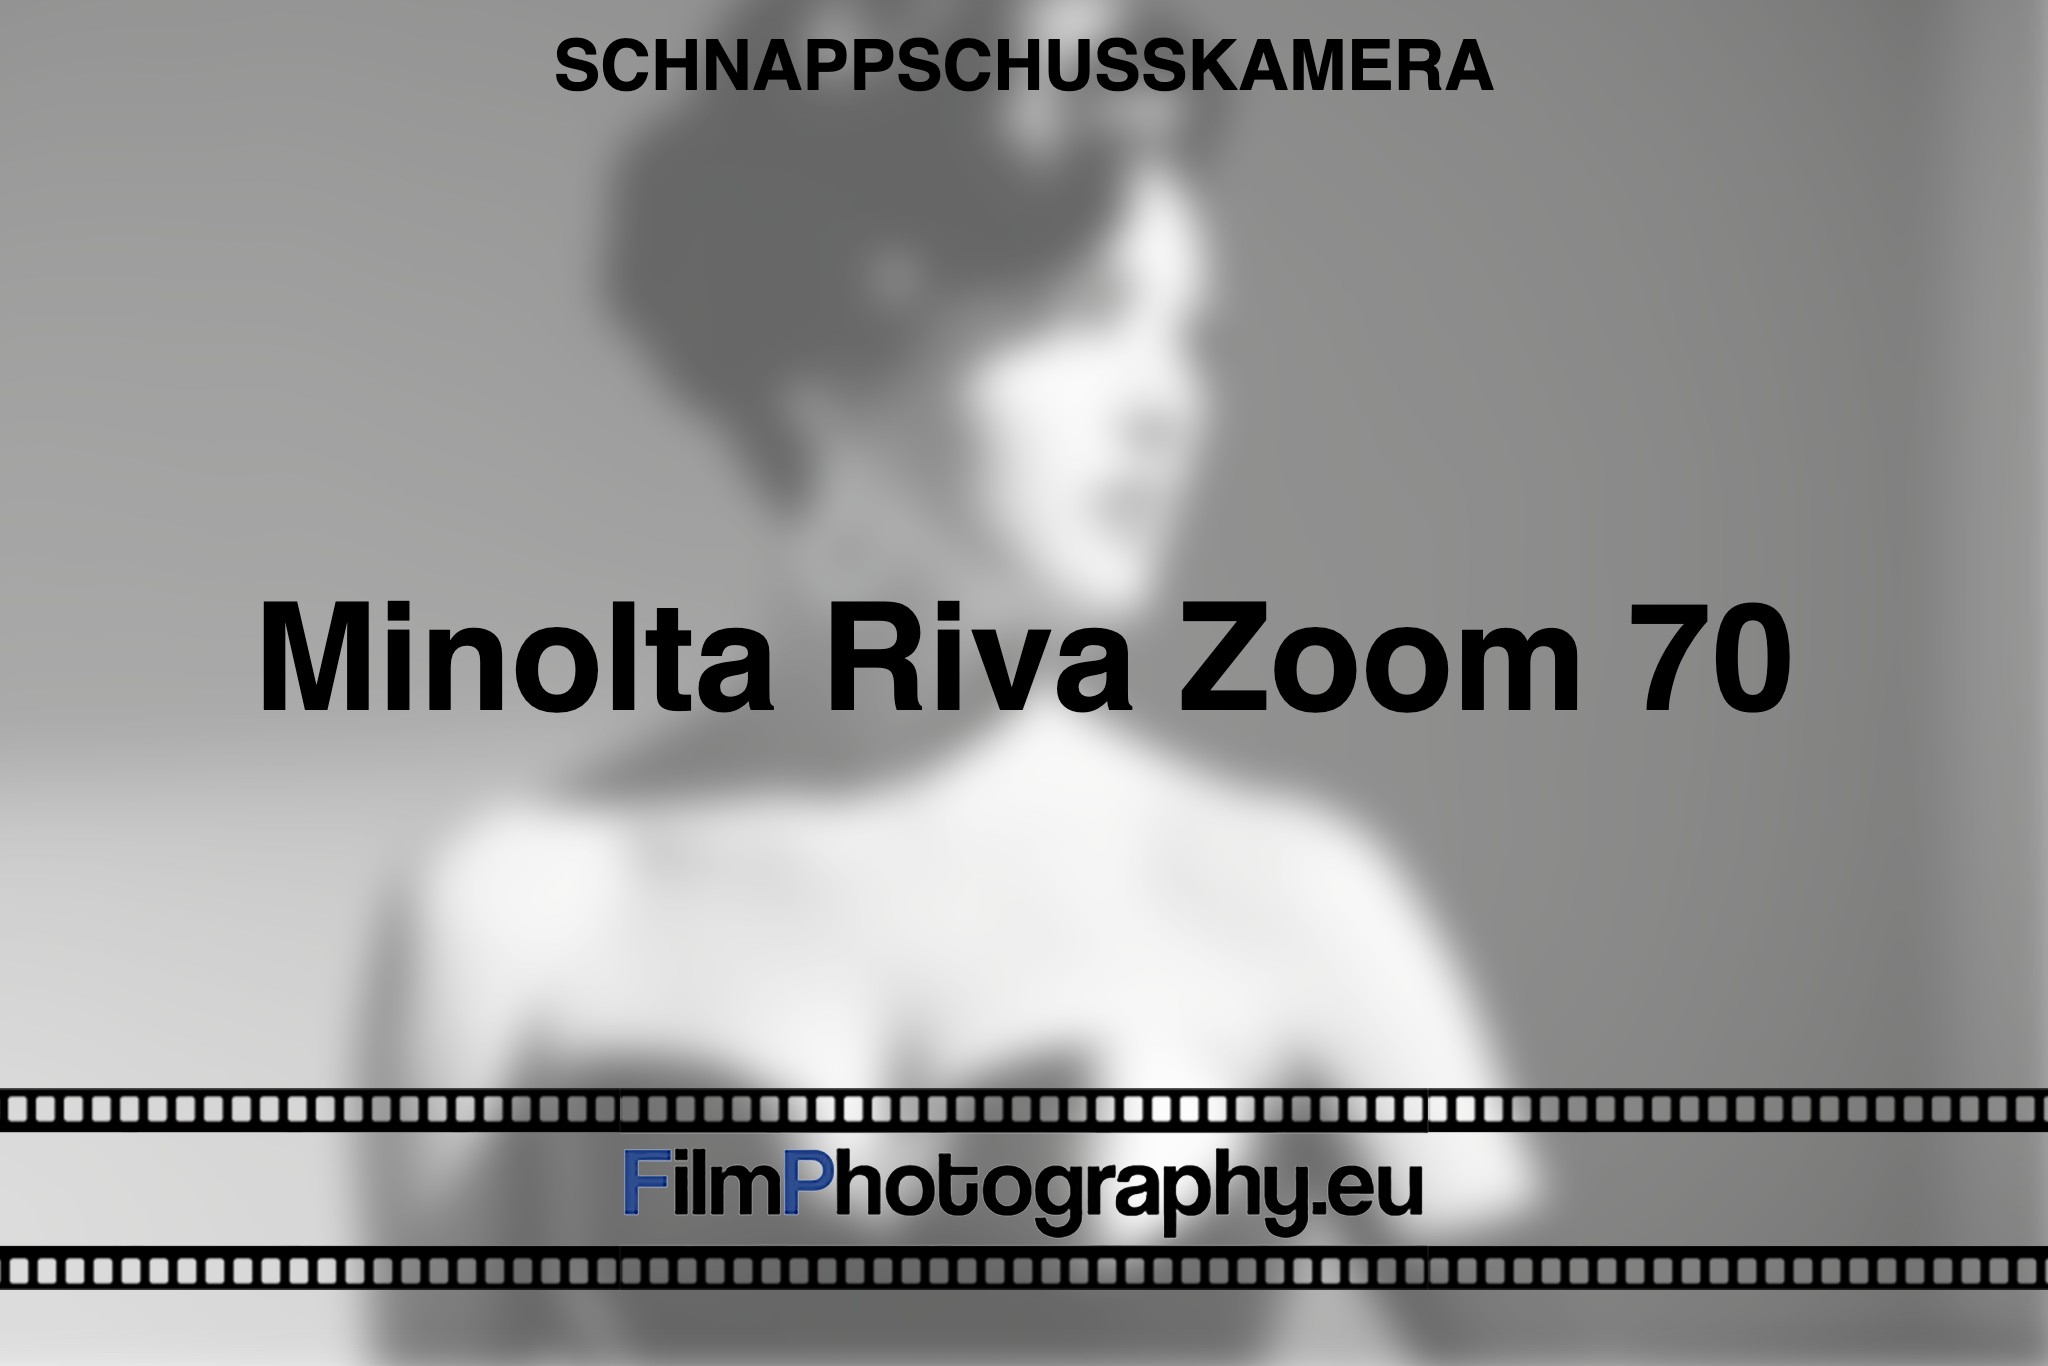 minolta-riva-zoom-70-schnappschusskamera-bnv